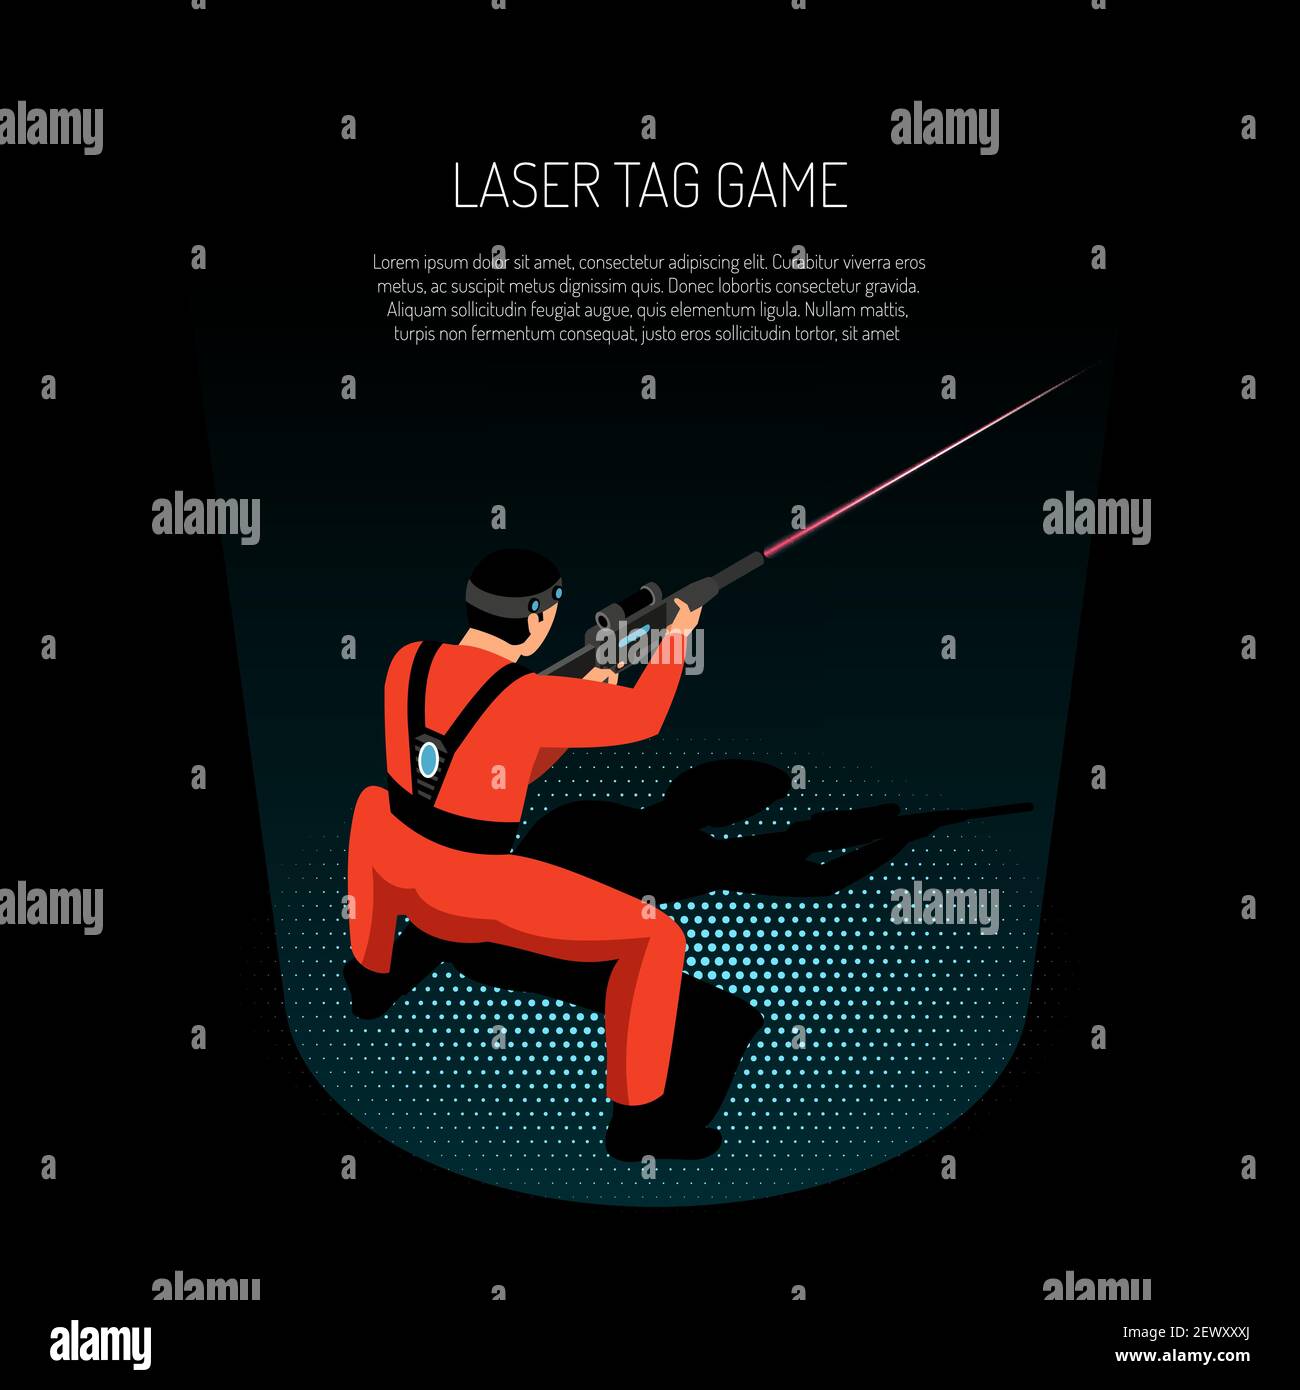 Laser-Tag-Spiel isometrische Werbung Poster mit Spieler Brennen Ziel Mit Infrarot-Strahl schwarzen Hintergrund Vektor-Illustration Stock Vektor